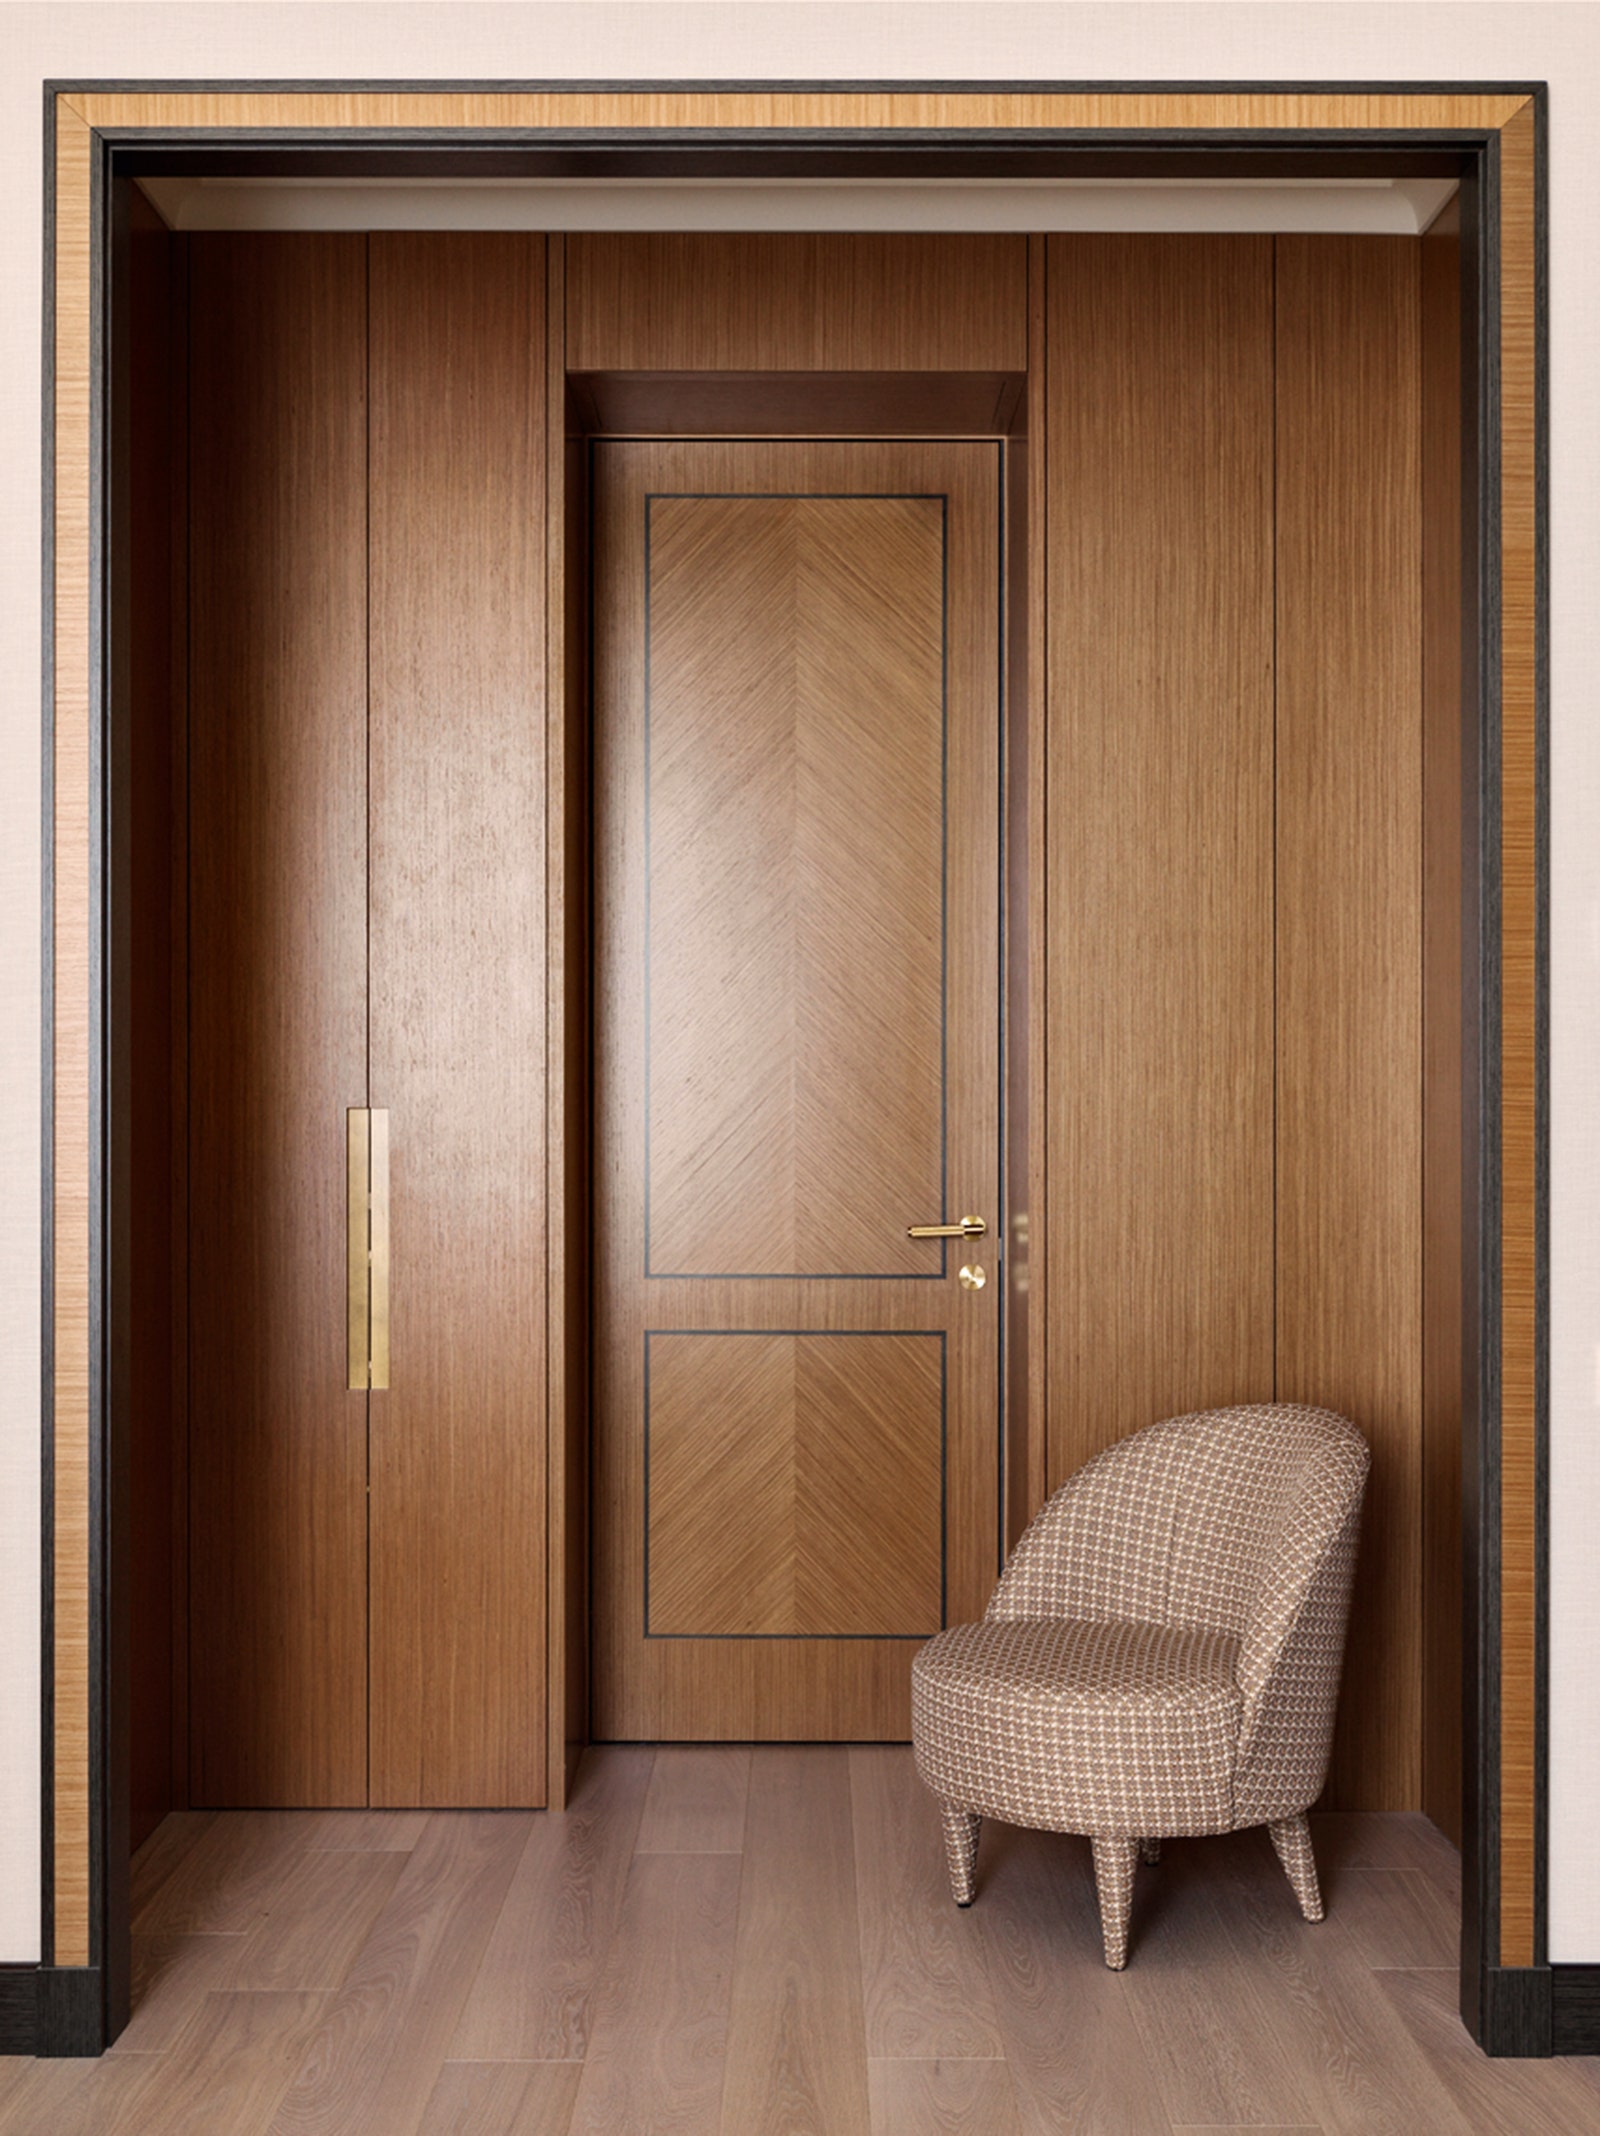 Гардеробная и вход в ванную. Шкафы и двери по эскизам Пидцан Gaisin and Co. кресло La Fibule в ткани Dedar.